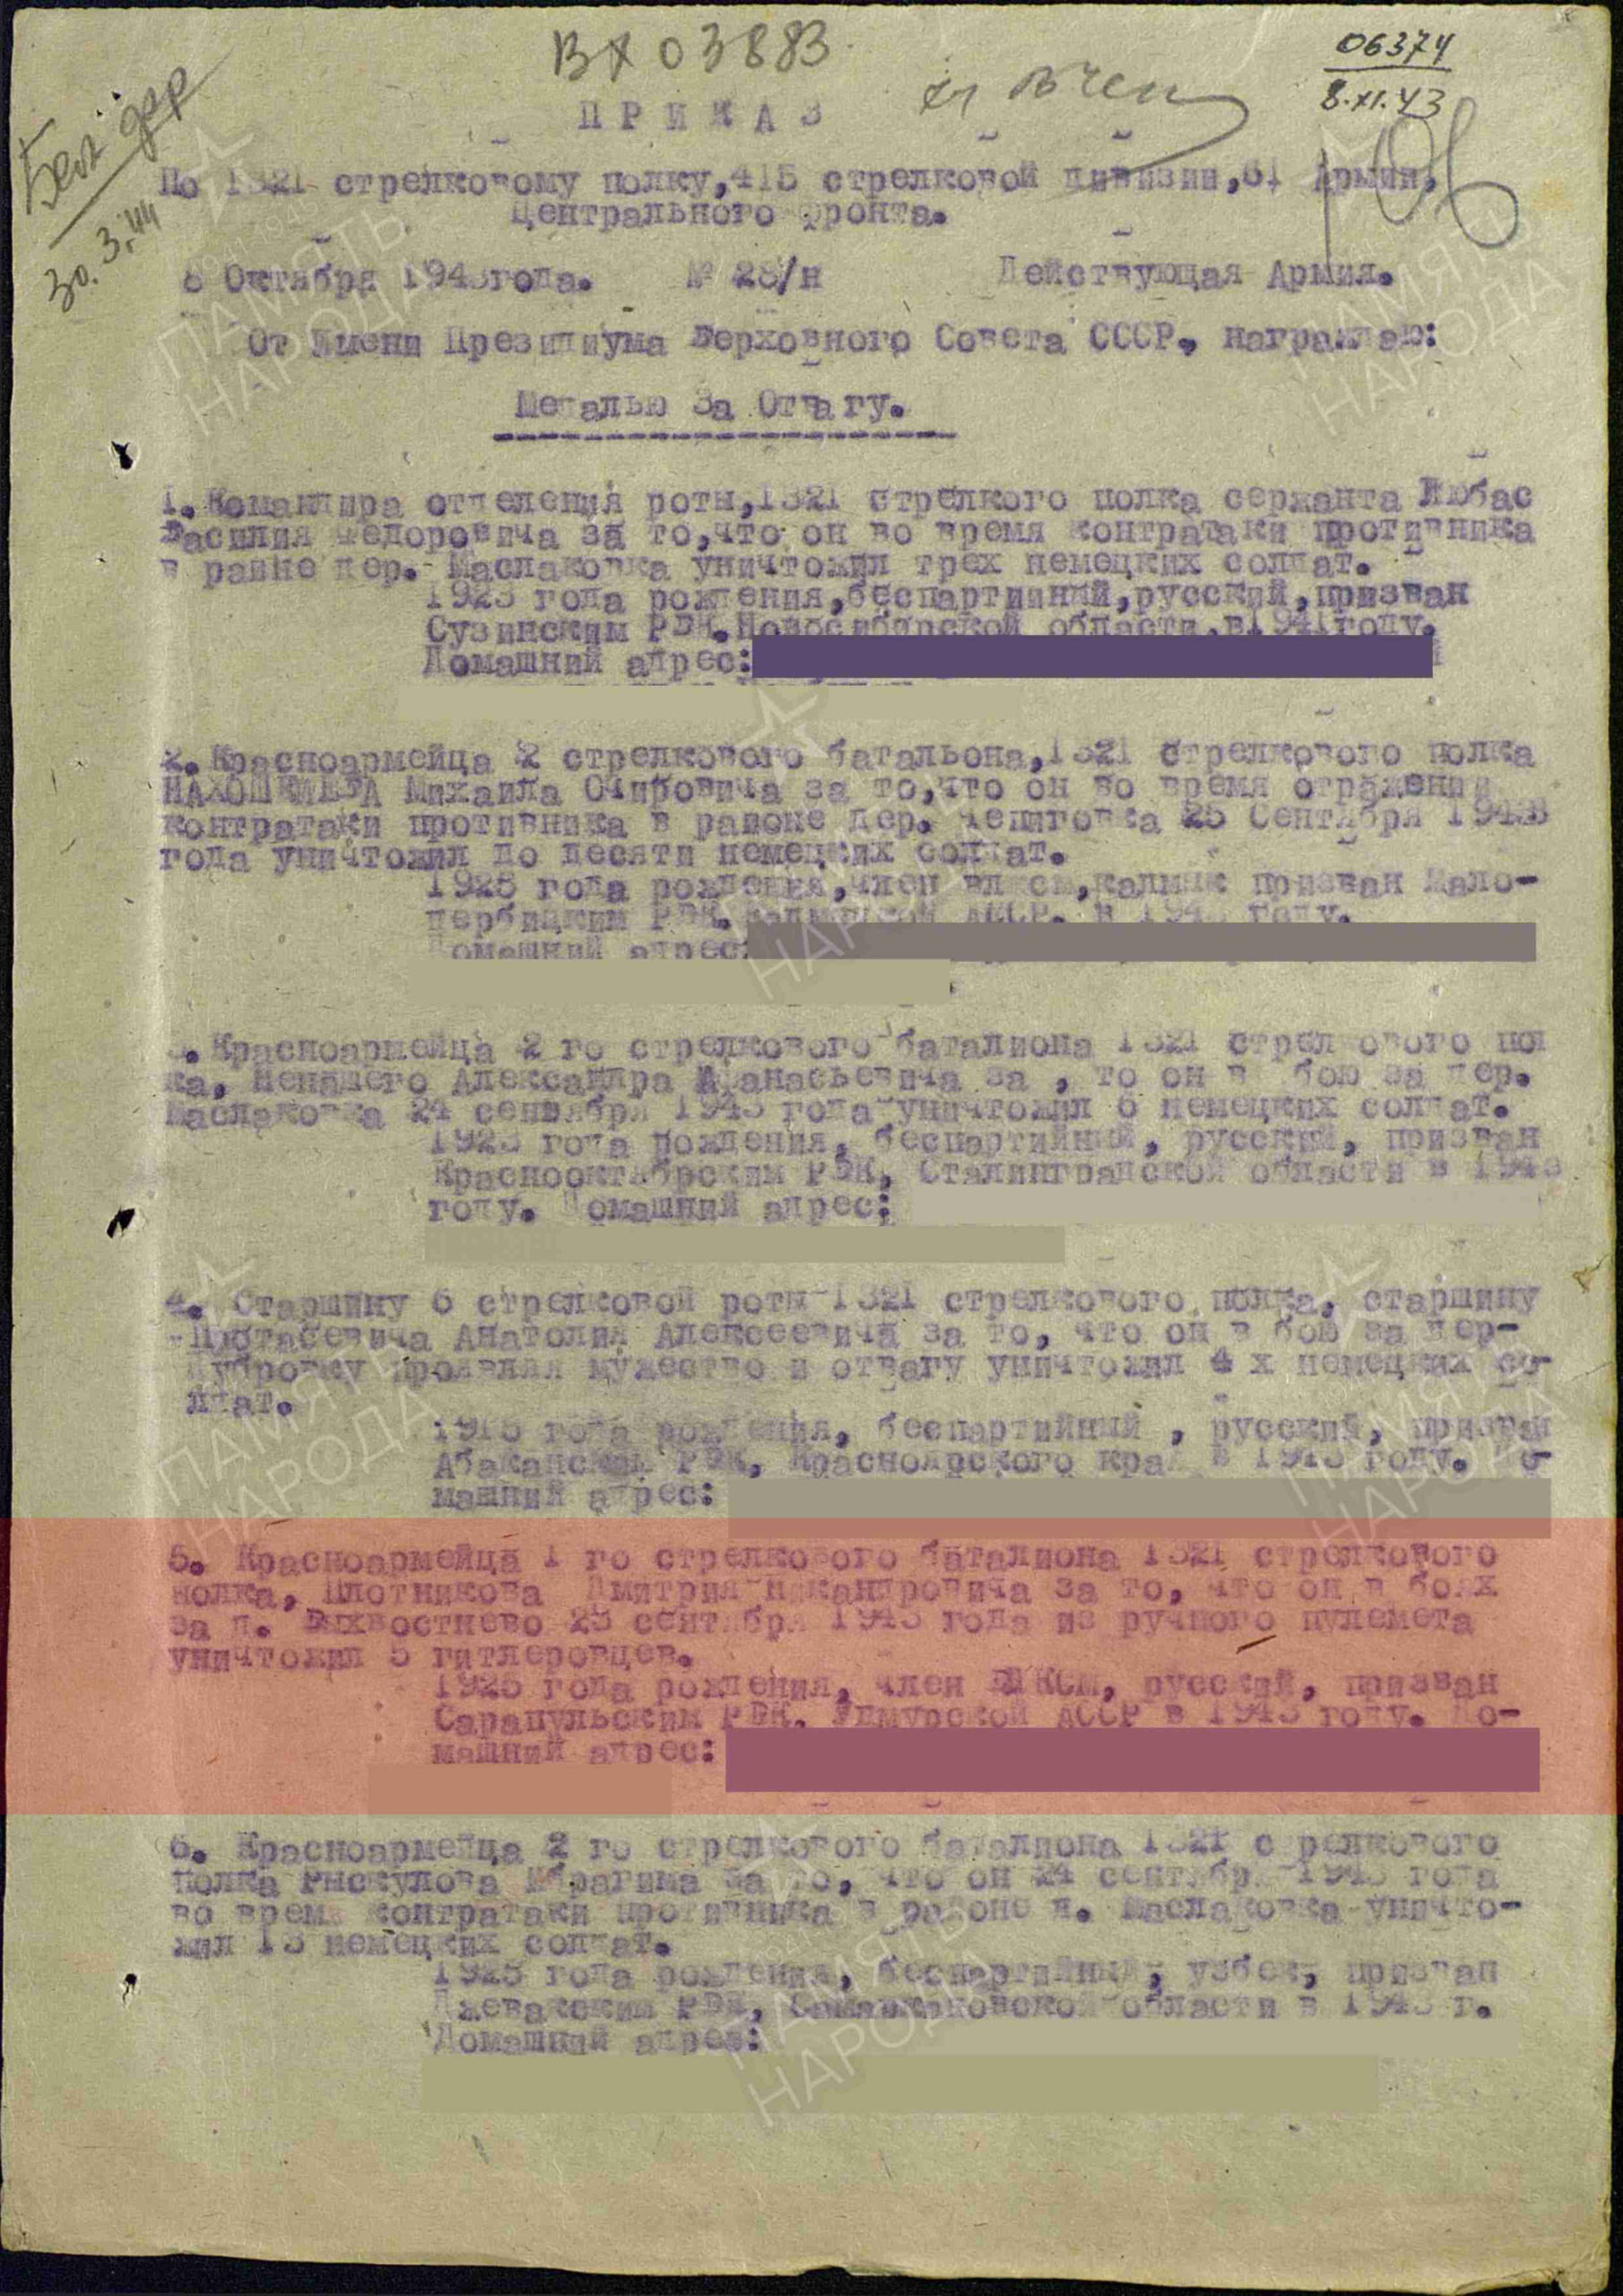 2. Лист приказа о награждении (строка в наградном списке). Орден Отечественной войны II степени